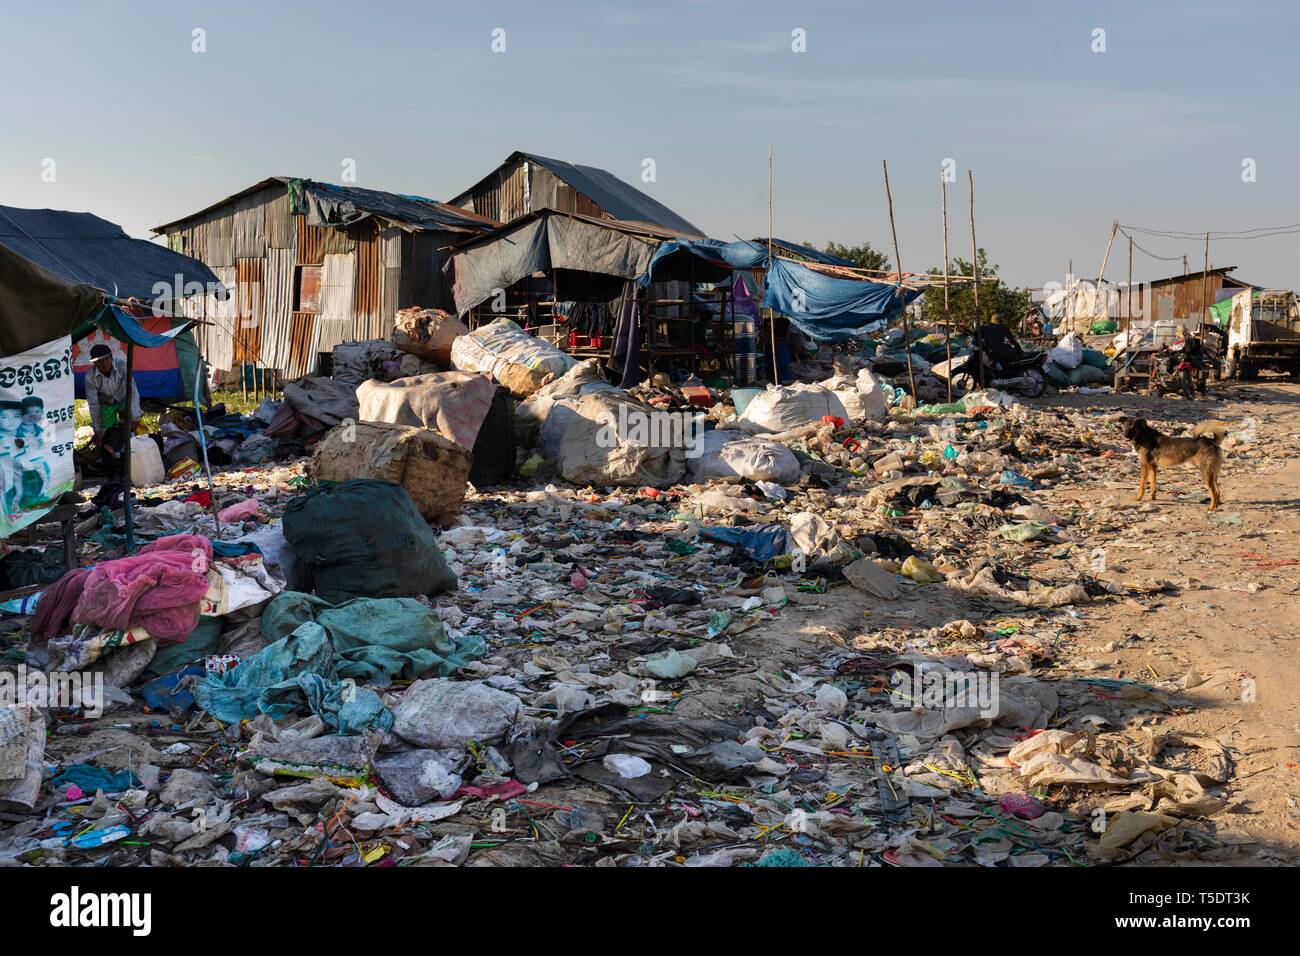 Huts at the garbage dump, Choeung Ek, Phnom Penh, Cambodia Stock Photo